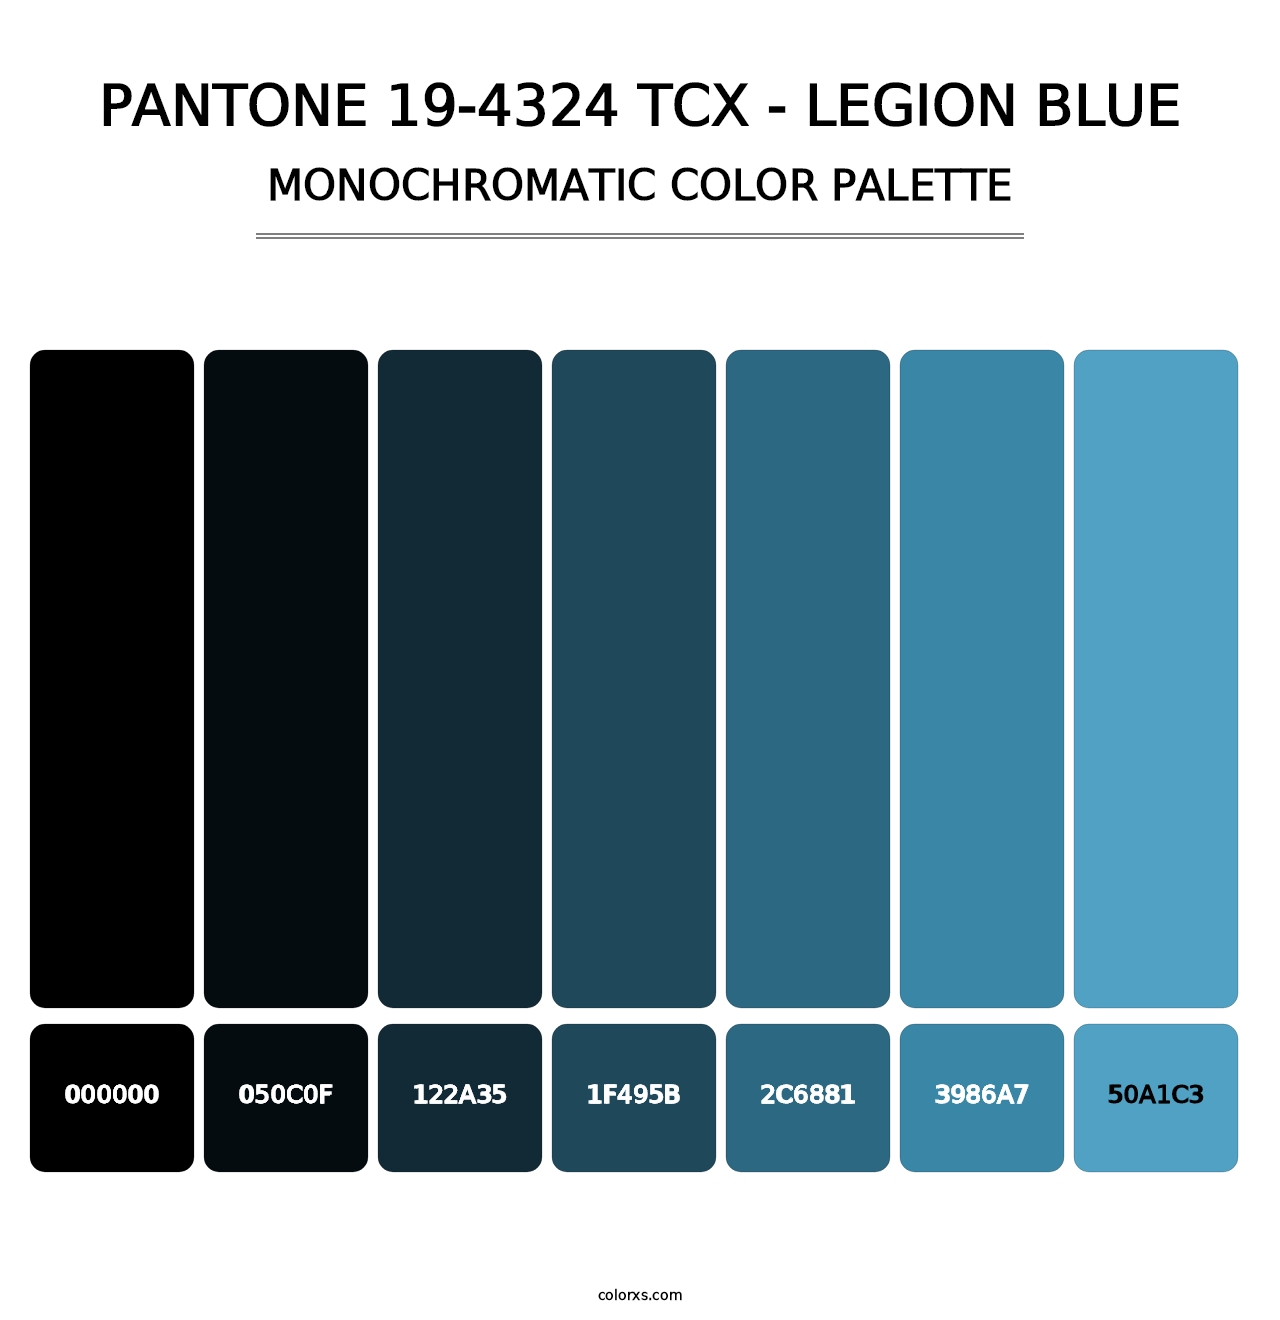 PANTONE 19-4324 TCX - Legion Blue - Monochromatic Color Palette